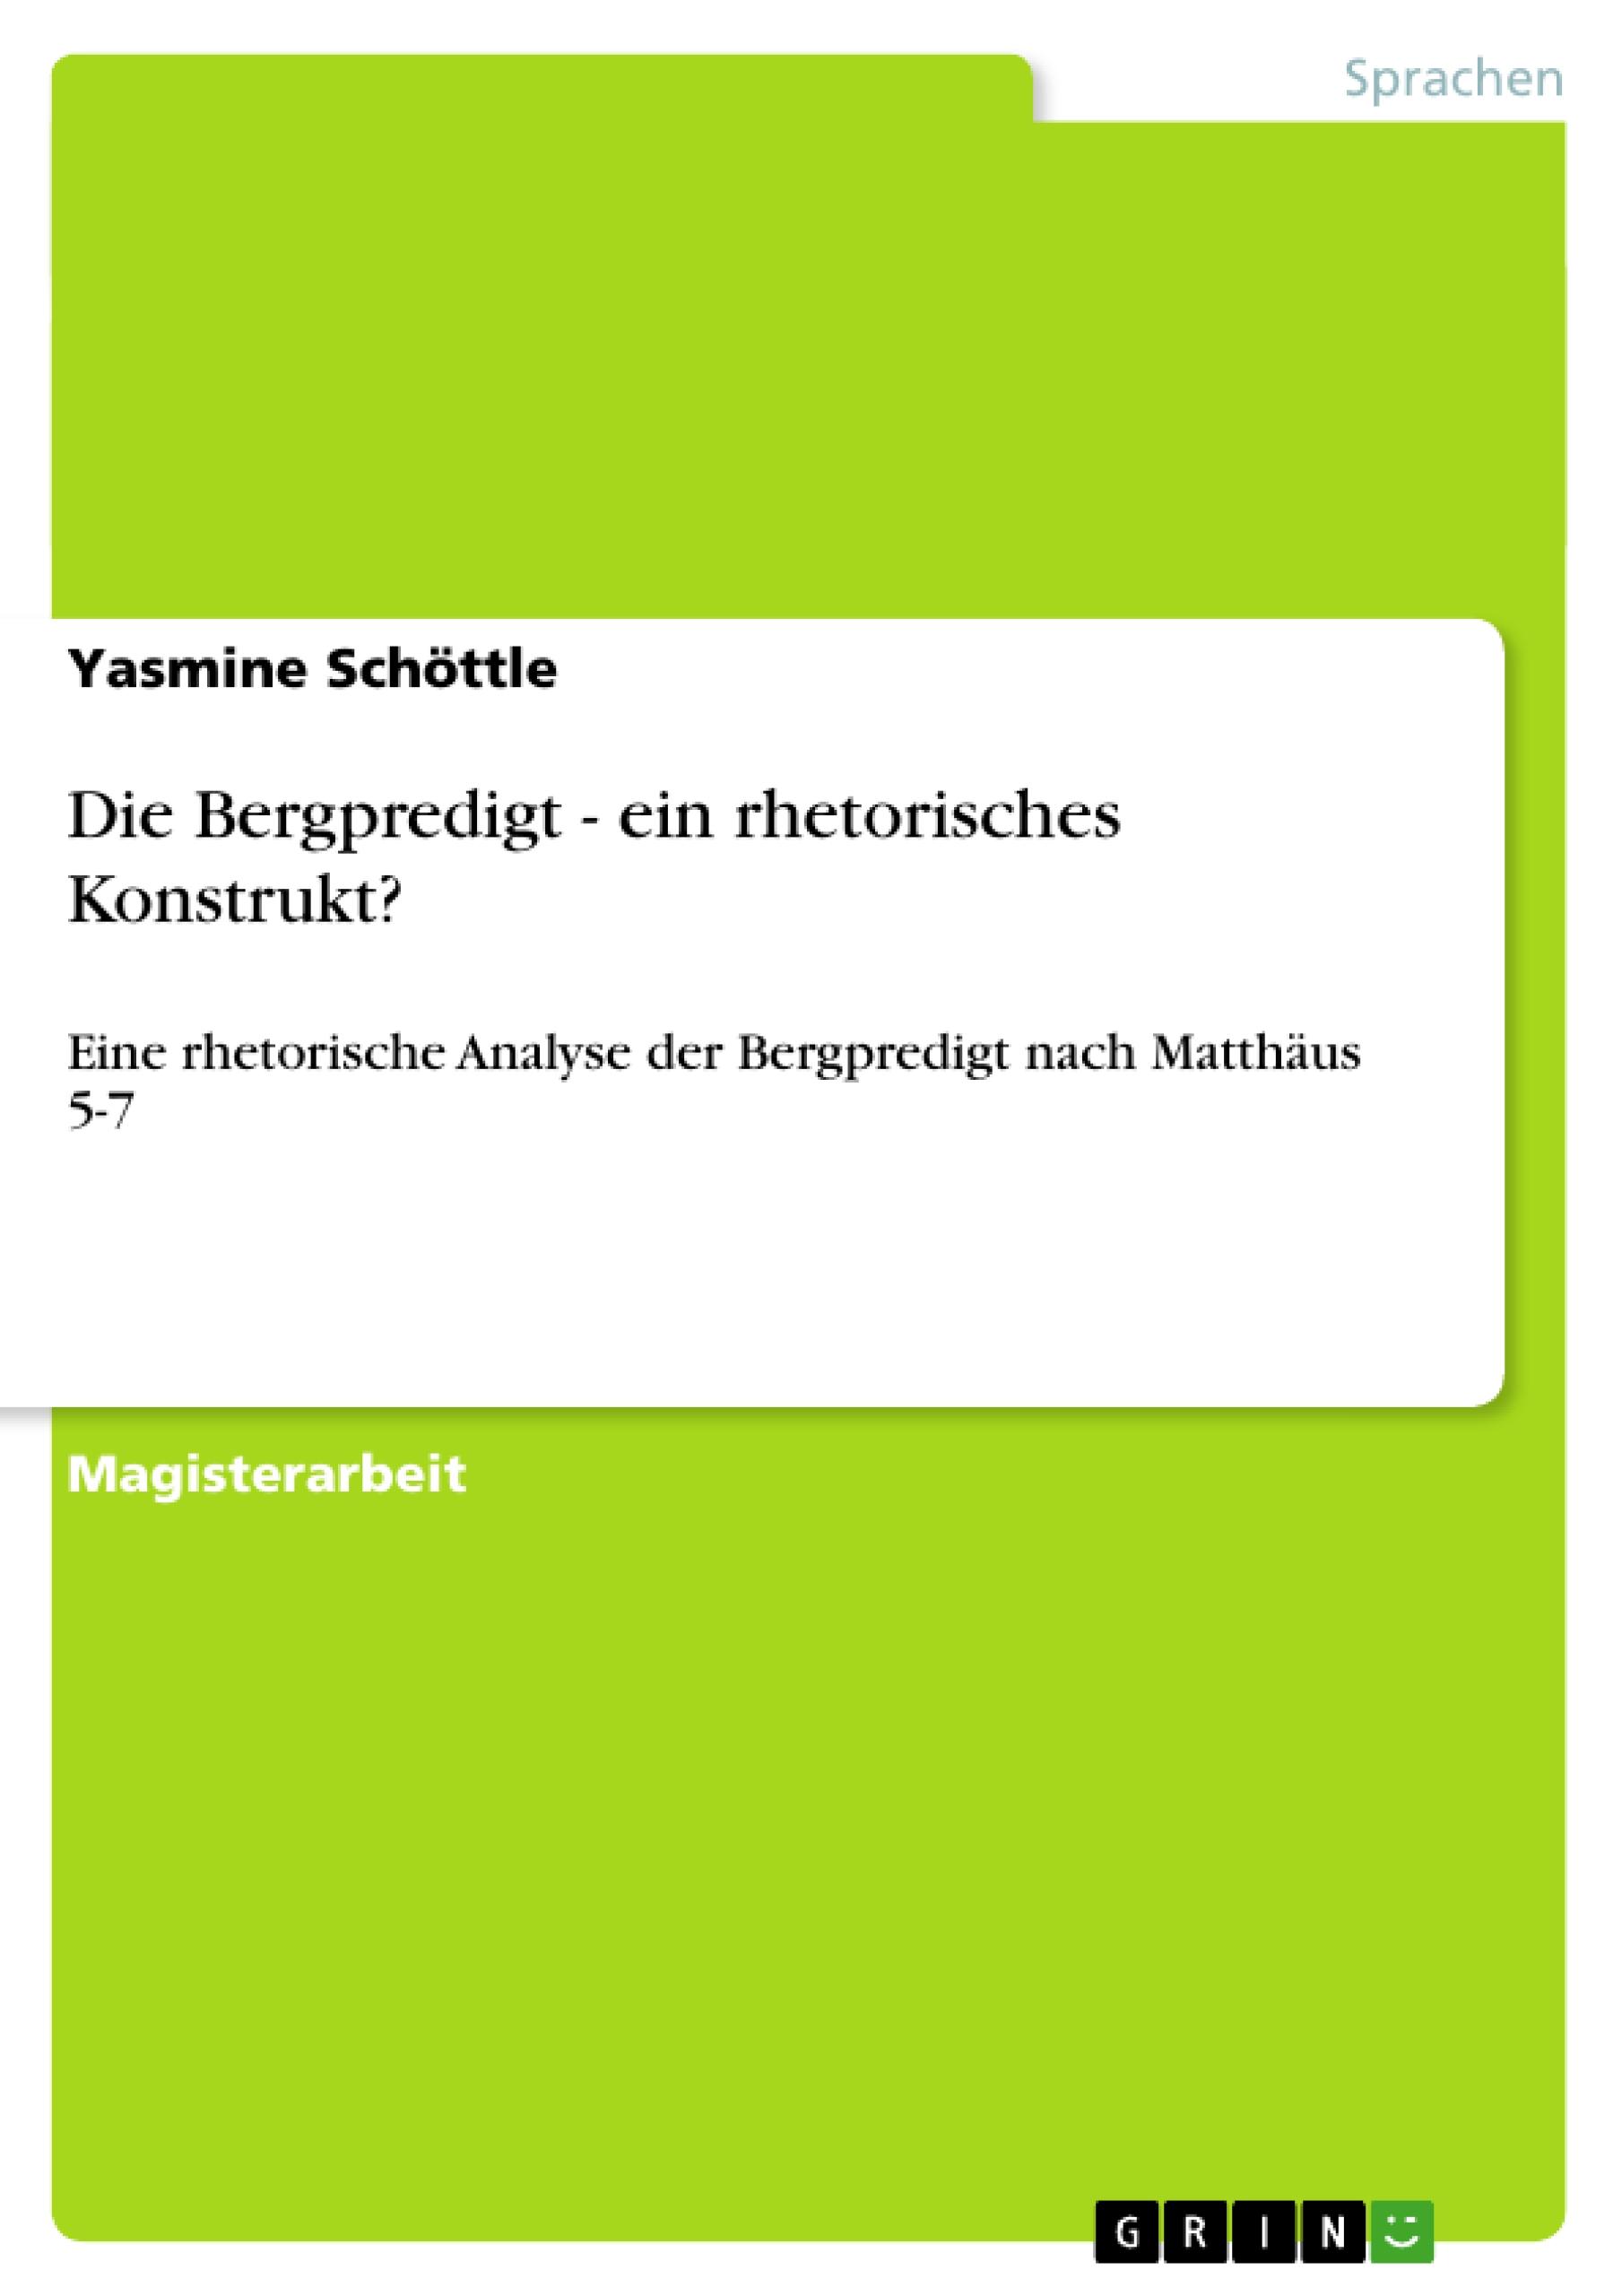 Die Bergpredigt - ein rhetorisches Konstrukt? | Eine rhetorische Analyse der Bergpredigt nach Matthäus 5-7 | Yasmine Schöttle | Taschenbuch | Paperback | 76 S. | Deutsch | 2010 | GRIN Verlag - Schöttle, Yasmine